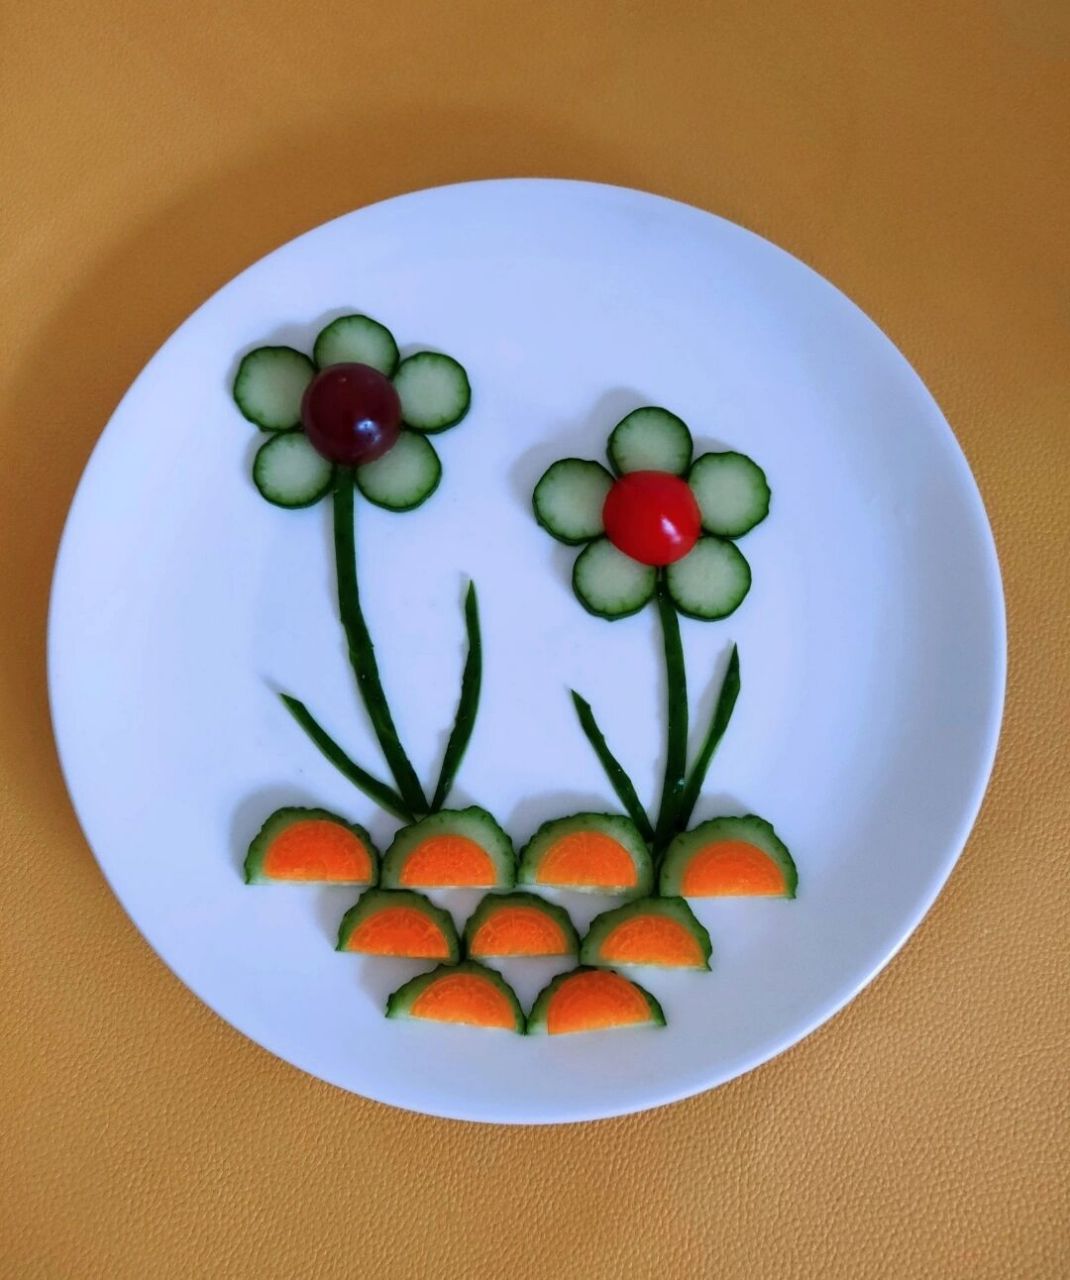 蔬菜拼盘幼儿园简单图片